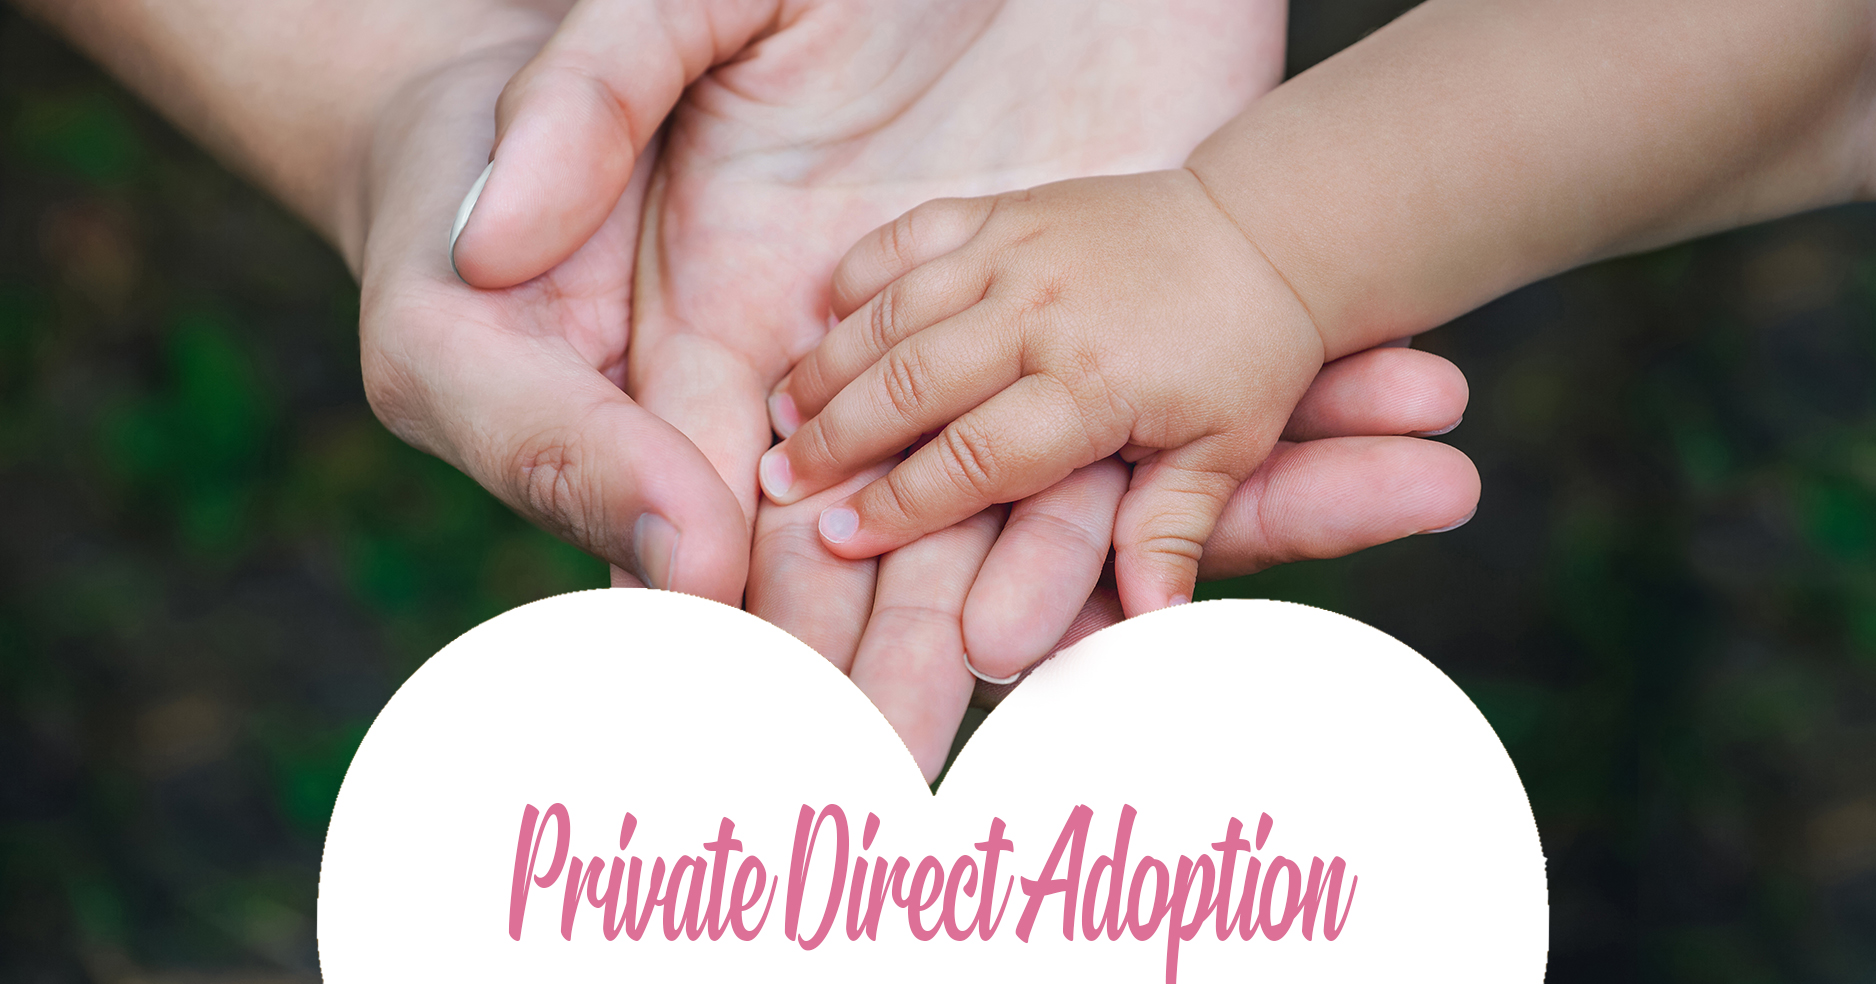 private direct adoption in alberta